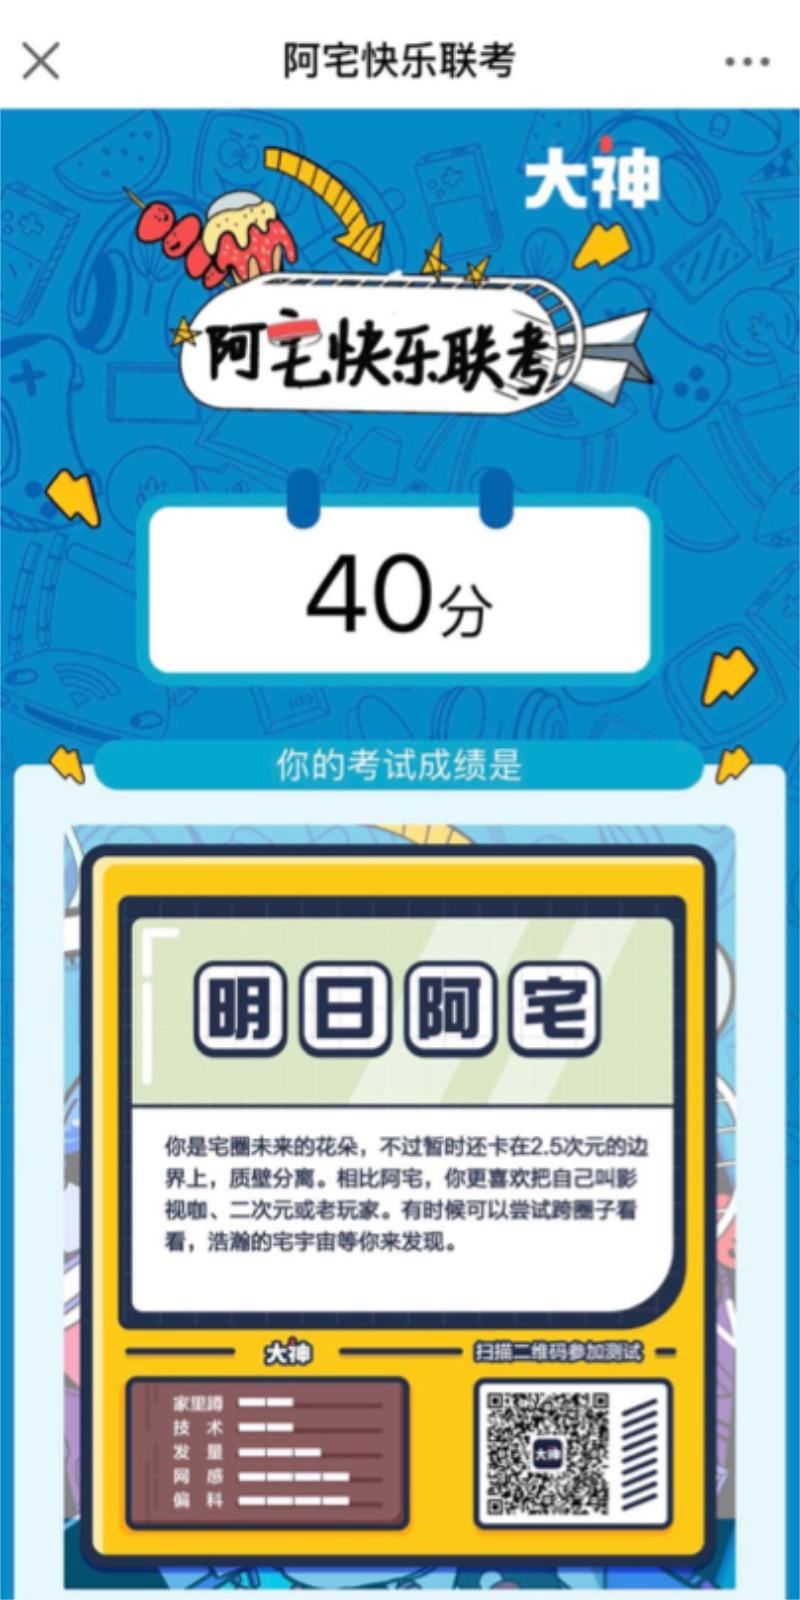 2020CICFxAGF广州动漫游戏盛典完美落幕！网易大神再携多重活动玩花样！